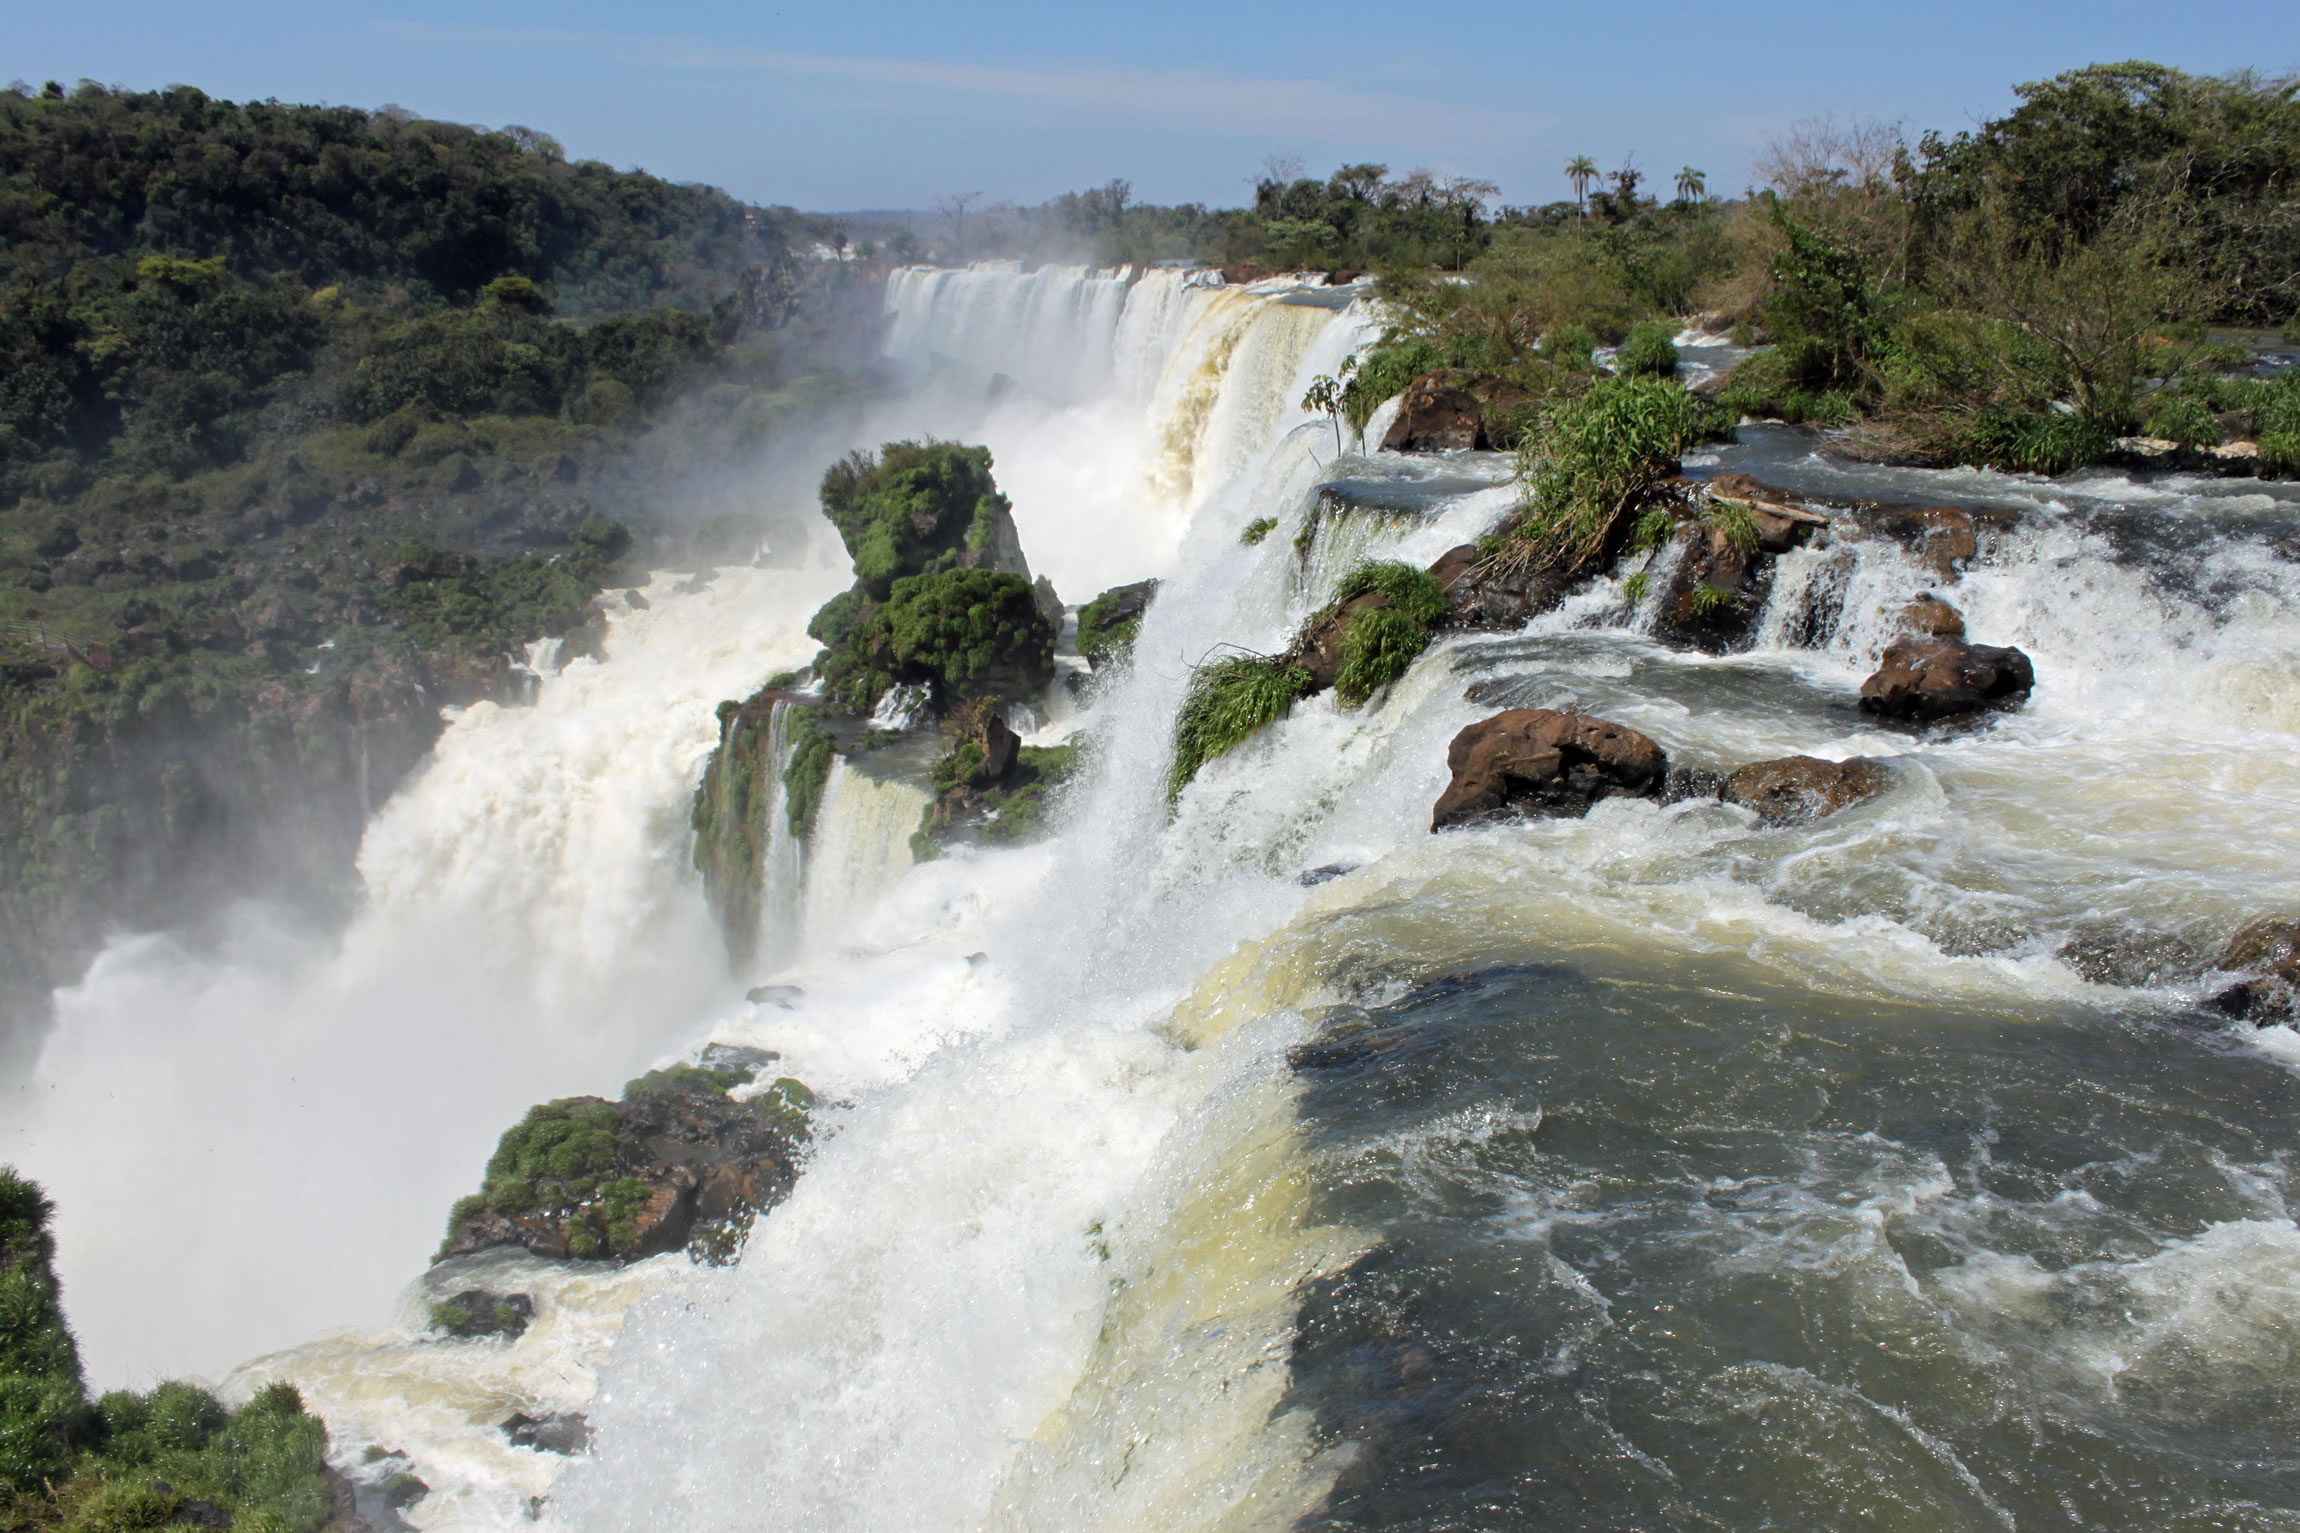 Sites Naturels à découvrir dans le monde - Les chutes d'Iguazú, Brésil et Argentine